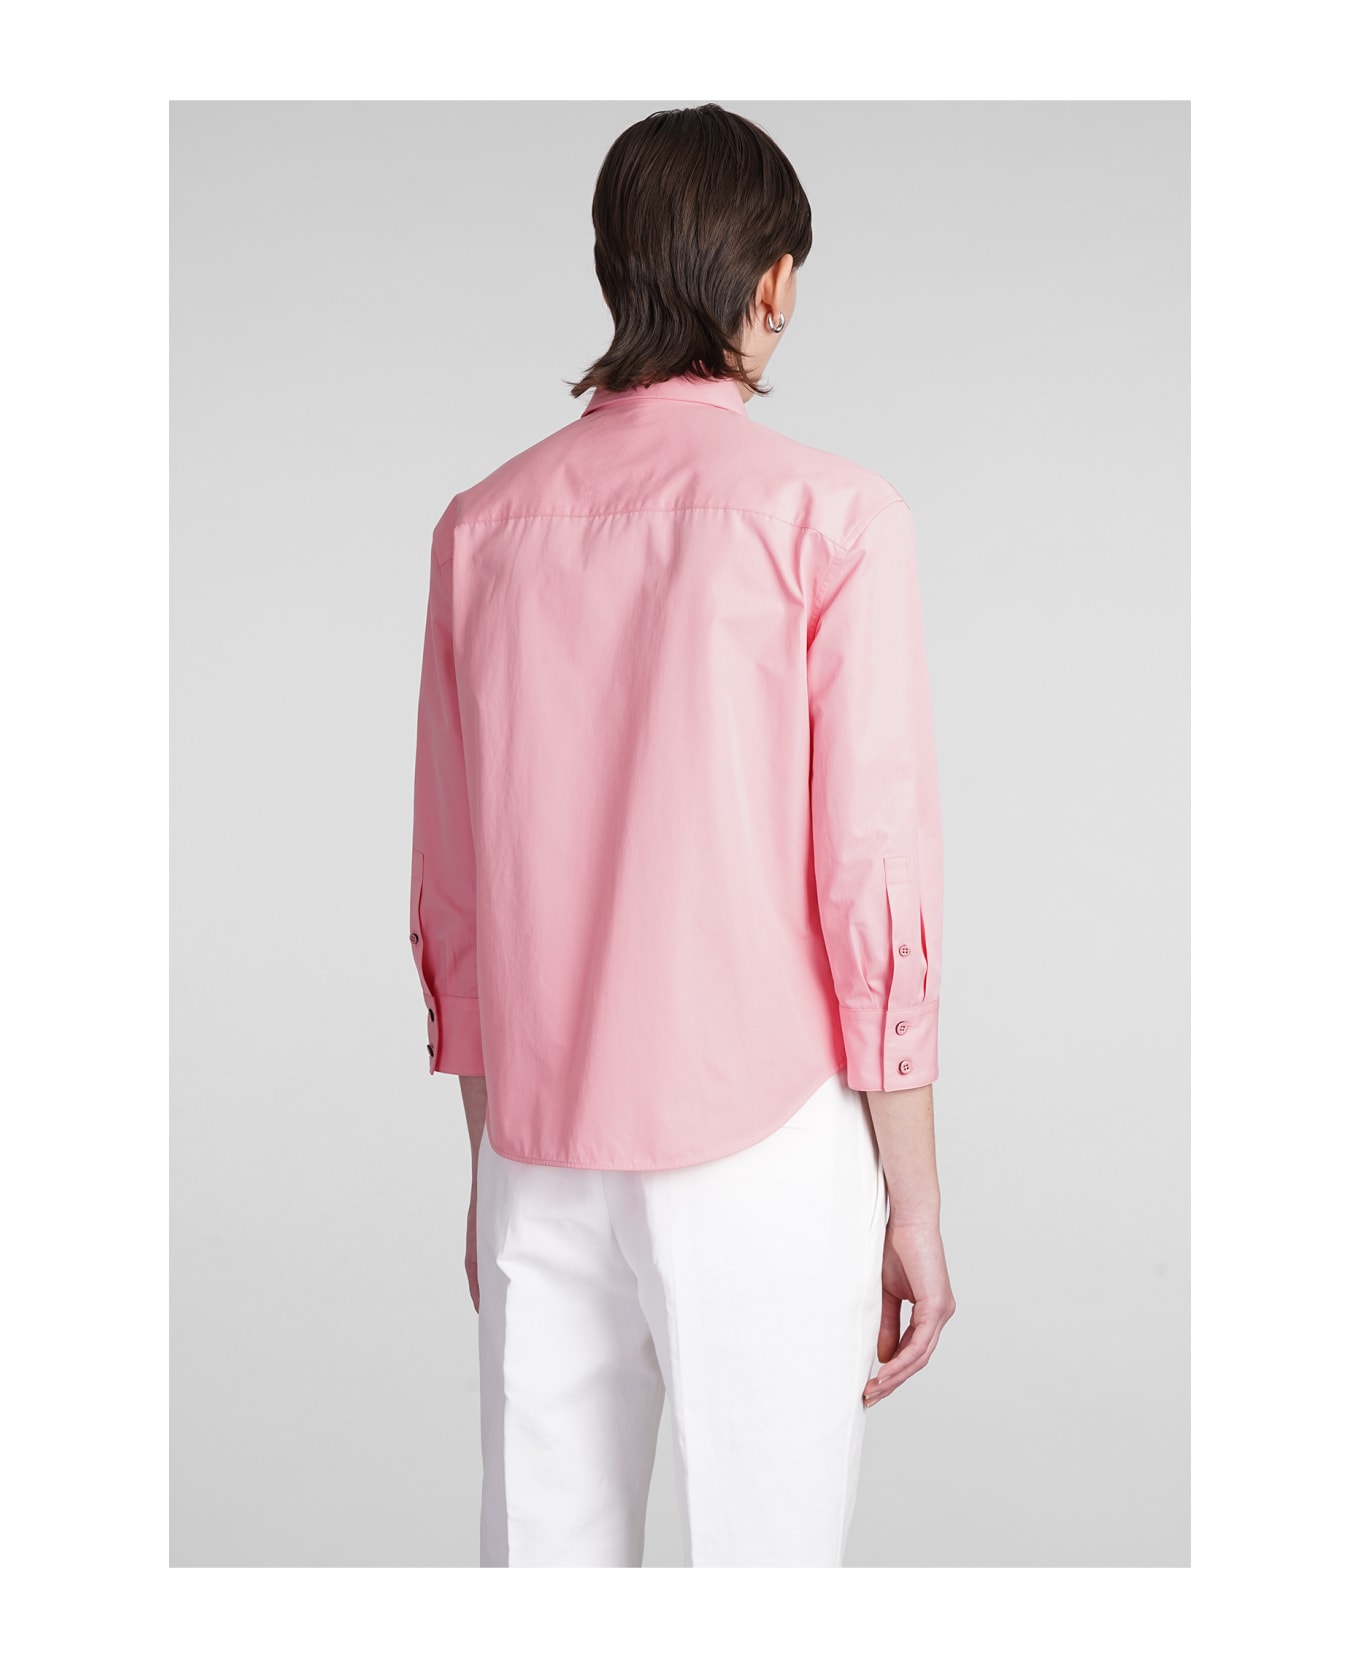 Jil Sander Shirt In Rose-pink Cotton - rose-pink